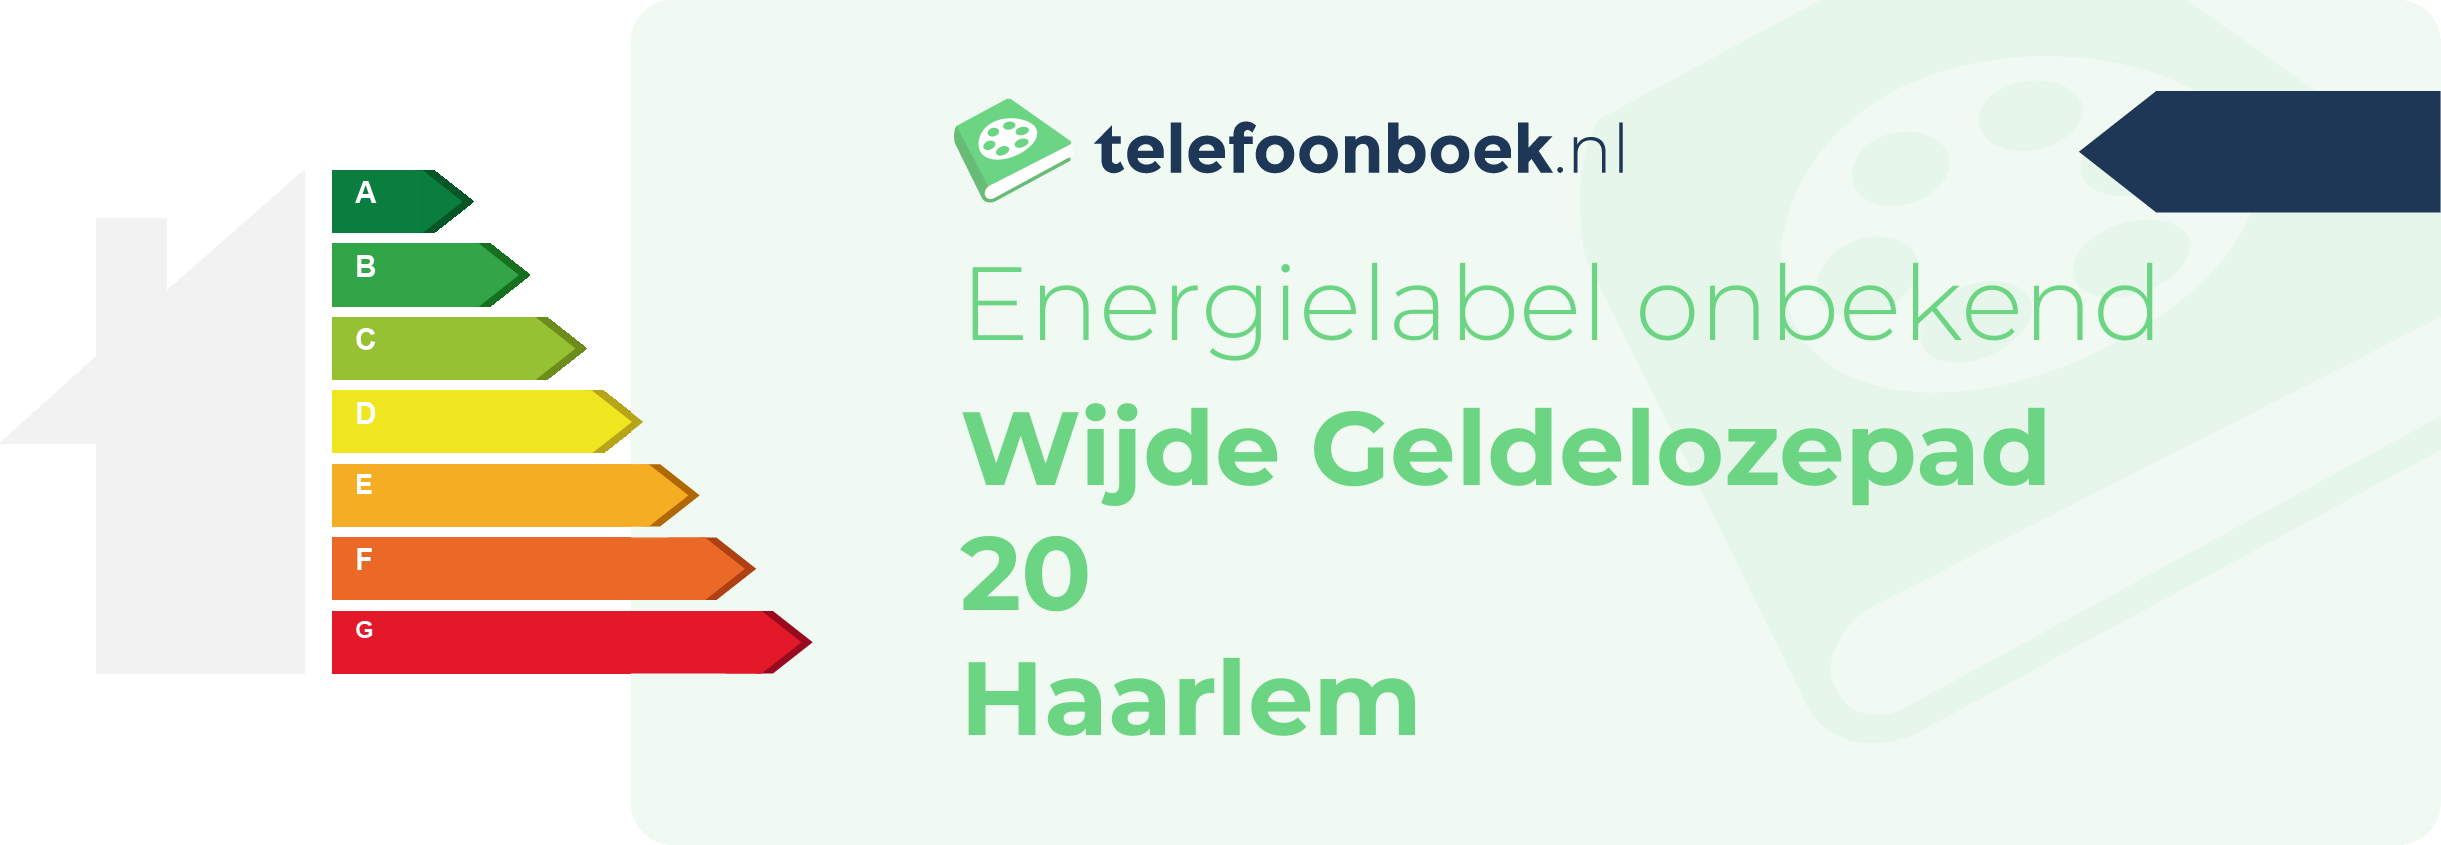 Energielabel Wijde Geldelozepad 20 Haarlem